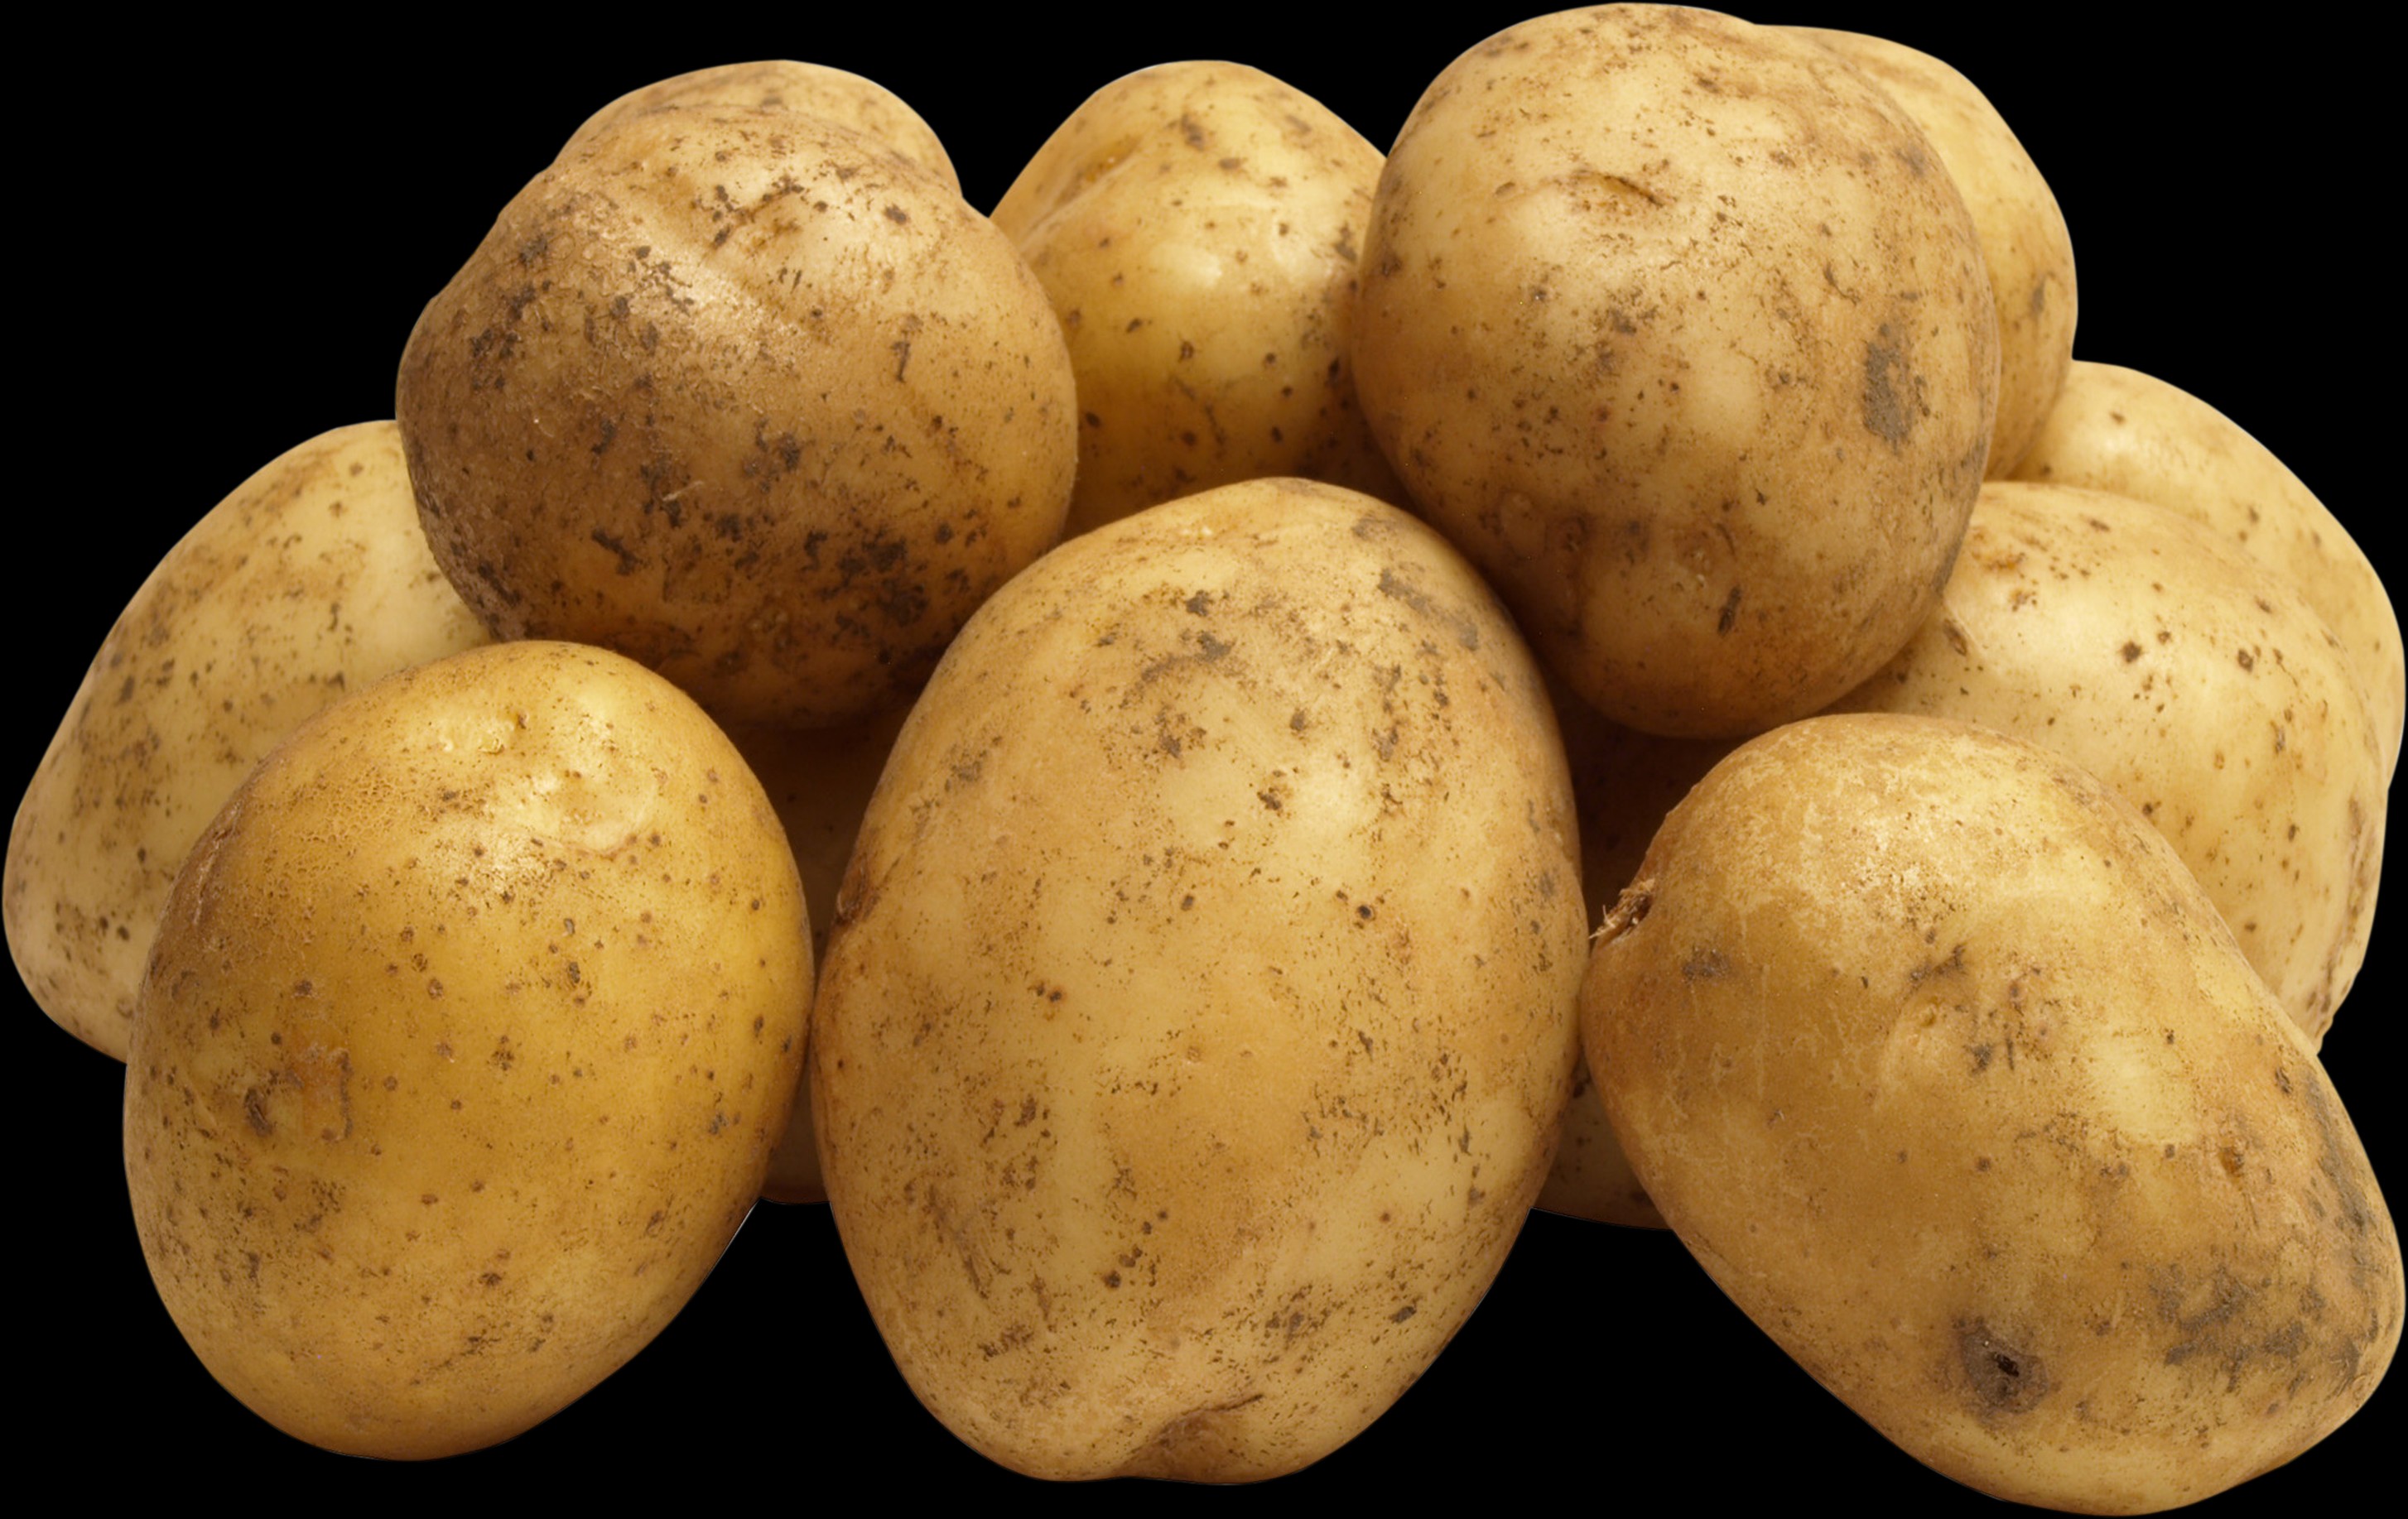 Kartoffeln sind in Deutschland eine sehr beliebte Beilage – kein Wunder, denn die Knolle ist extrem vielseitig. Bild: www.freundin.de